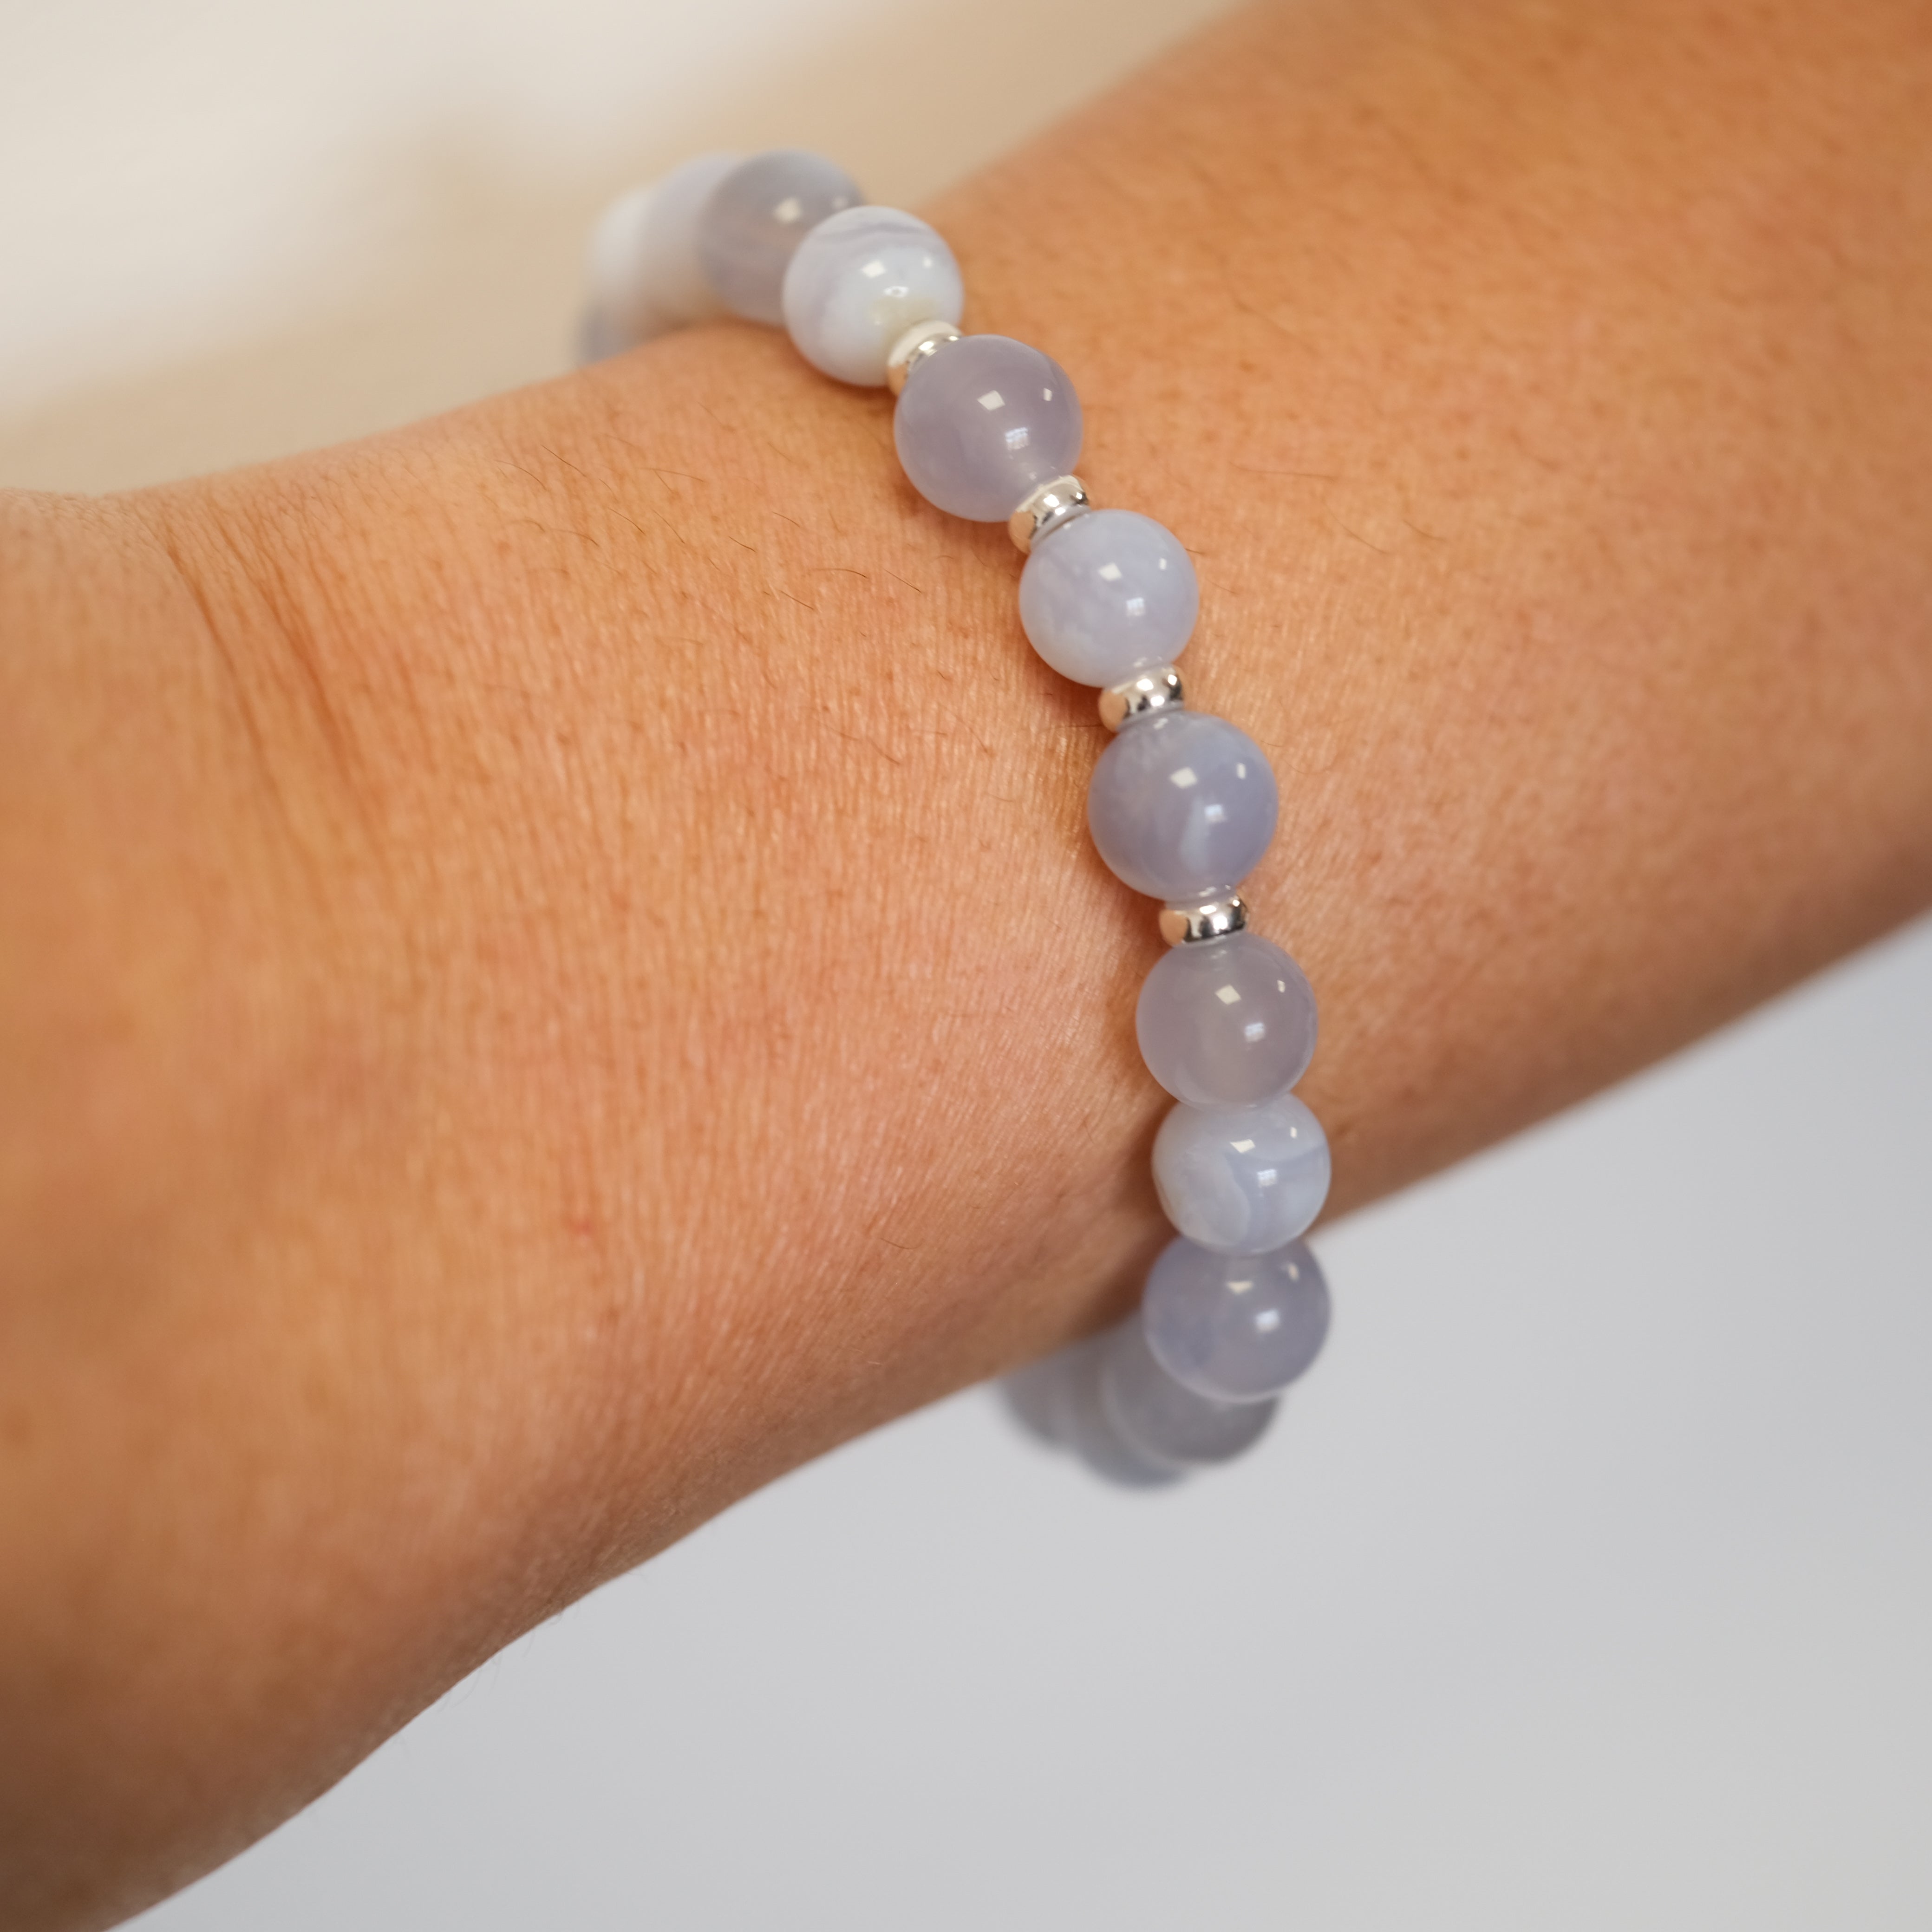 Blue Lace Agate gemstone bracelet in 8mm beads worn on a model's wrist